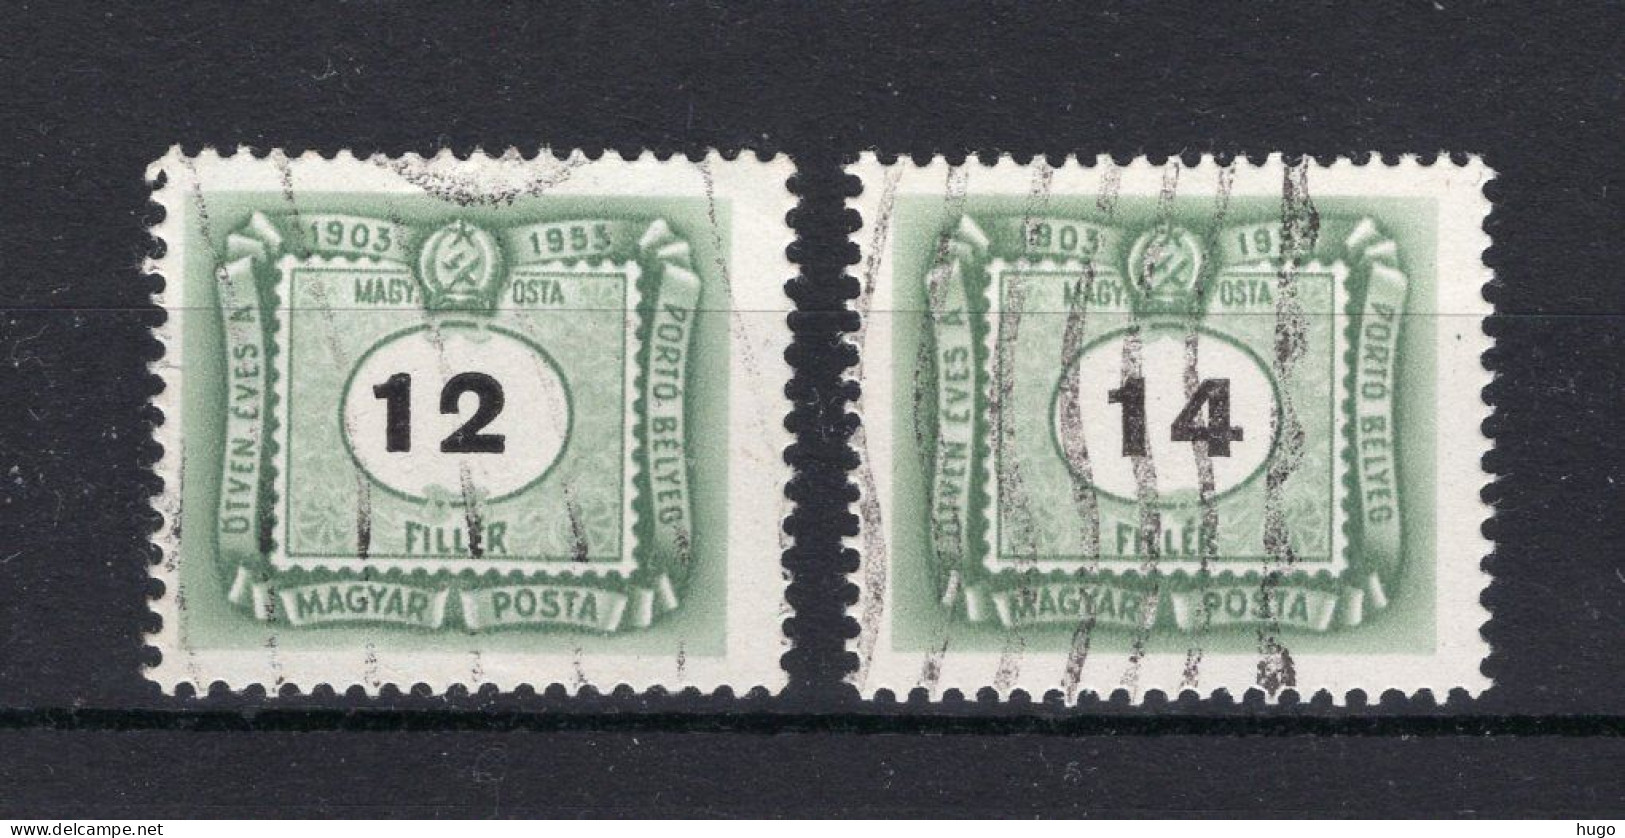 HONGARIJE Yt. T201/202° Gestempeld Portzegels 1953 - Impuestos